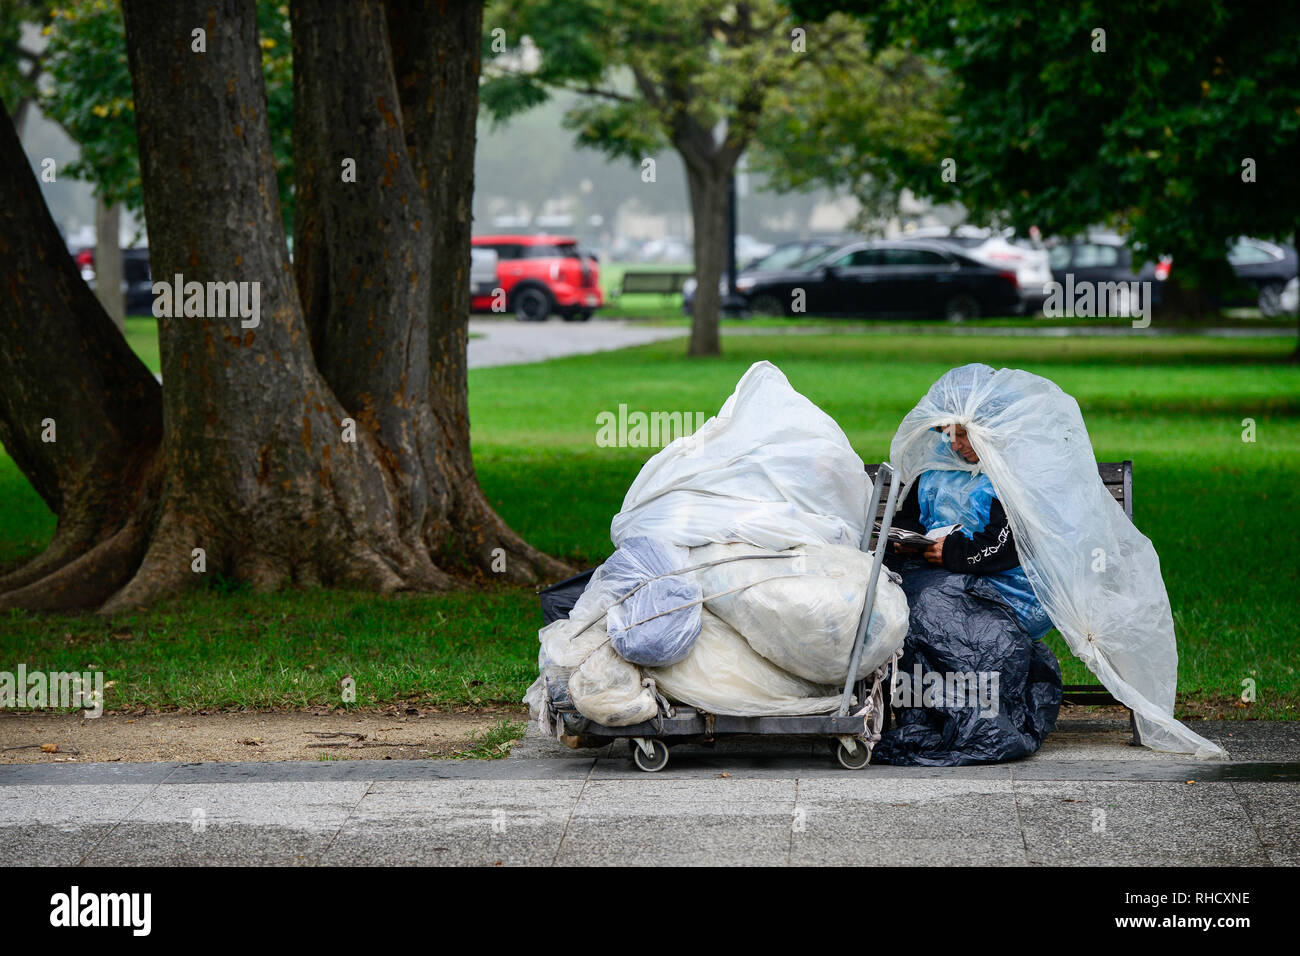 Stati Uniti d'America, Washington DC, donna senzatetto nel parco vicino casa bianca / STATI UNITI D'AMERICA, Washington DC, obdachlose Frau im Park beim weissen Haus Foto Stock